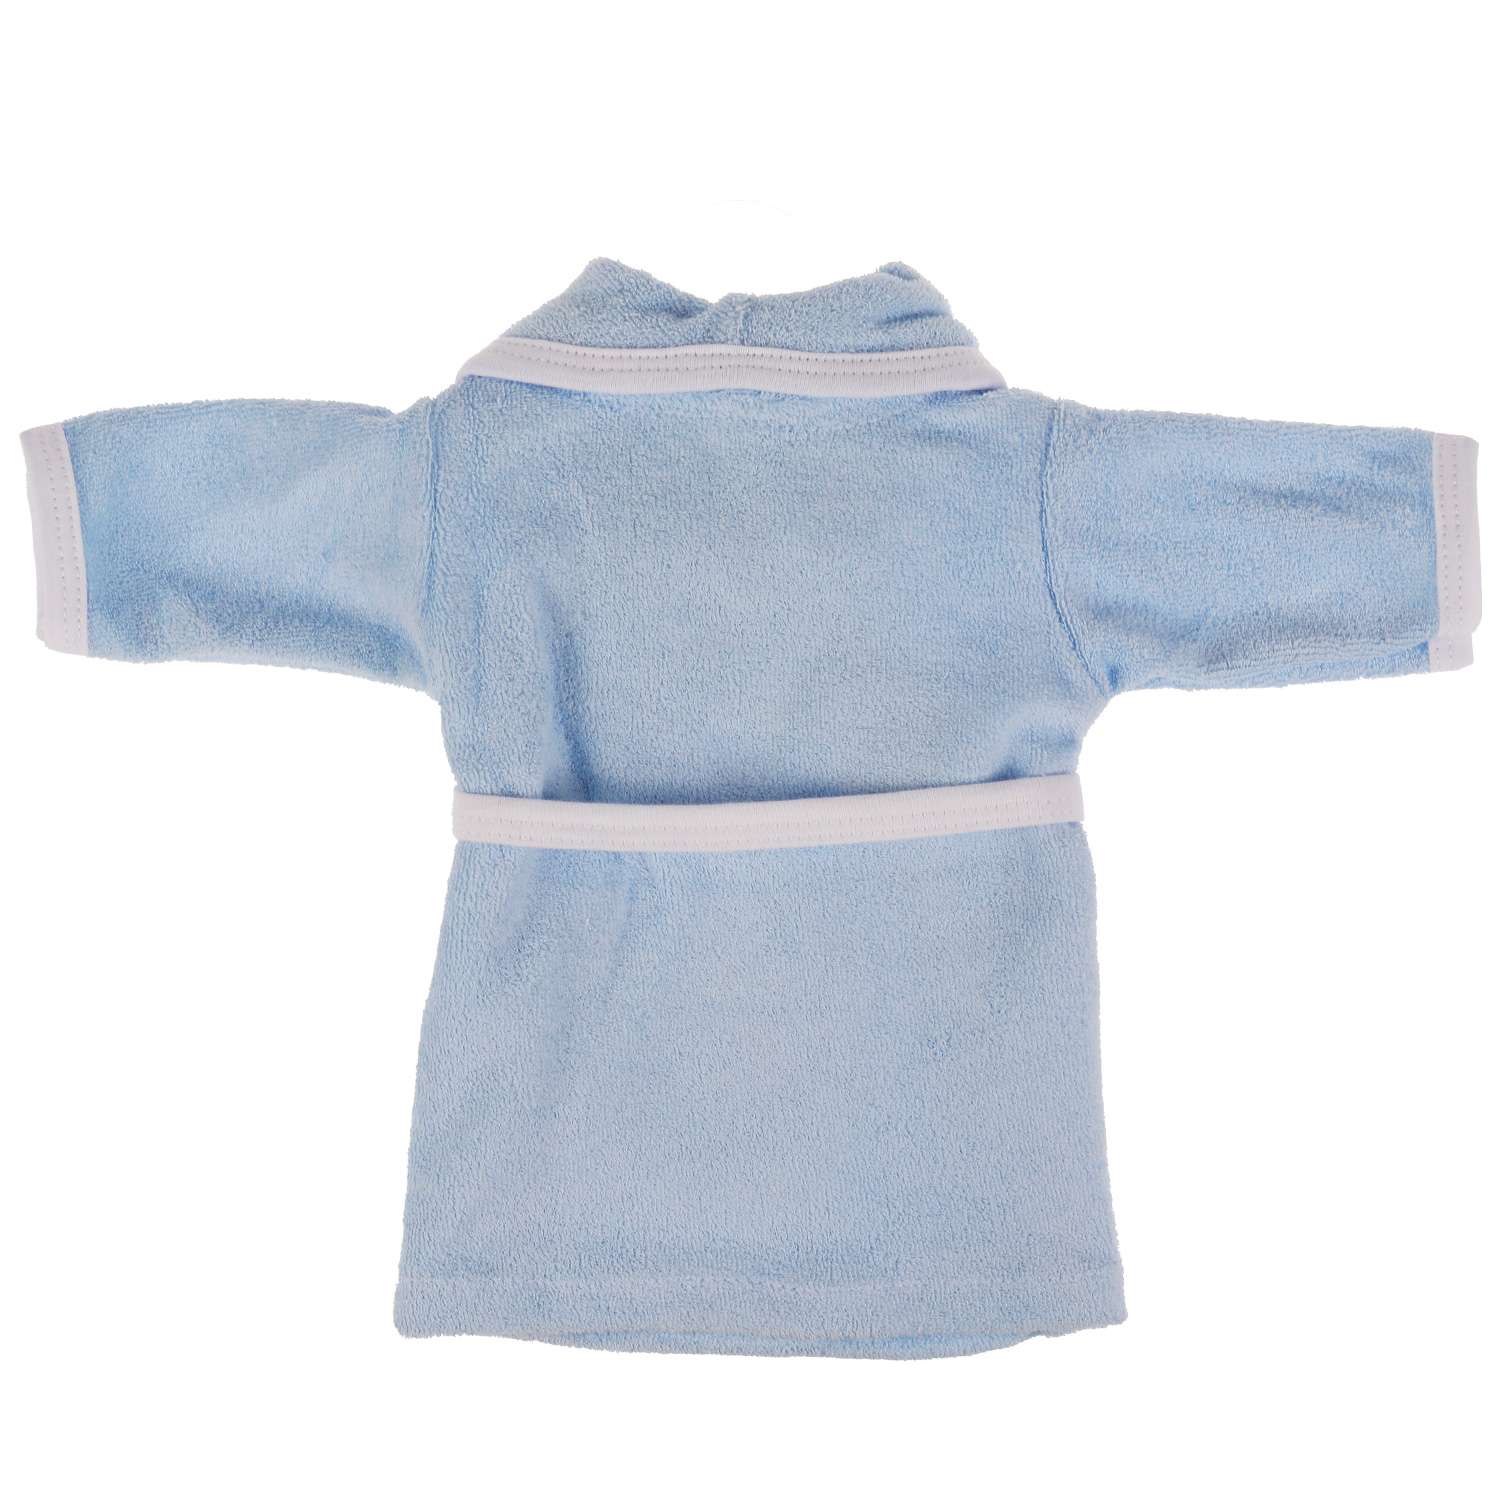 Одежда для кукол Карапуз 40-42 см голубой халат сова 334983 - фото 2